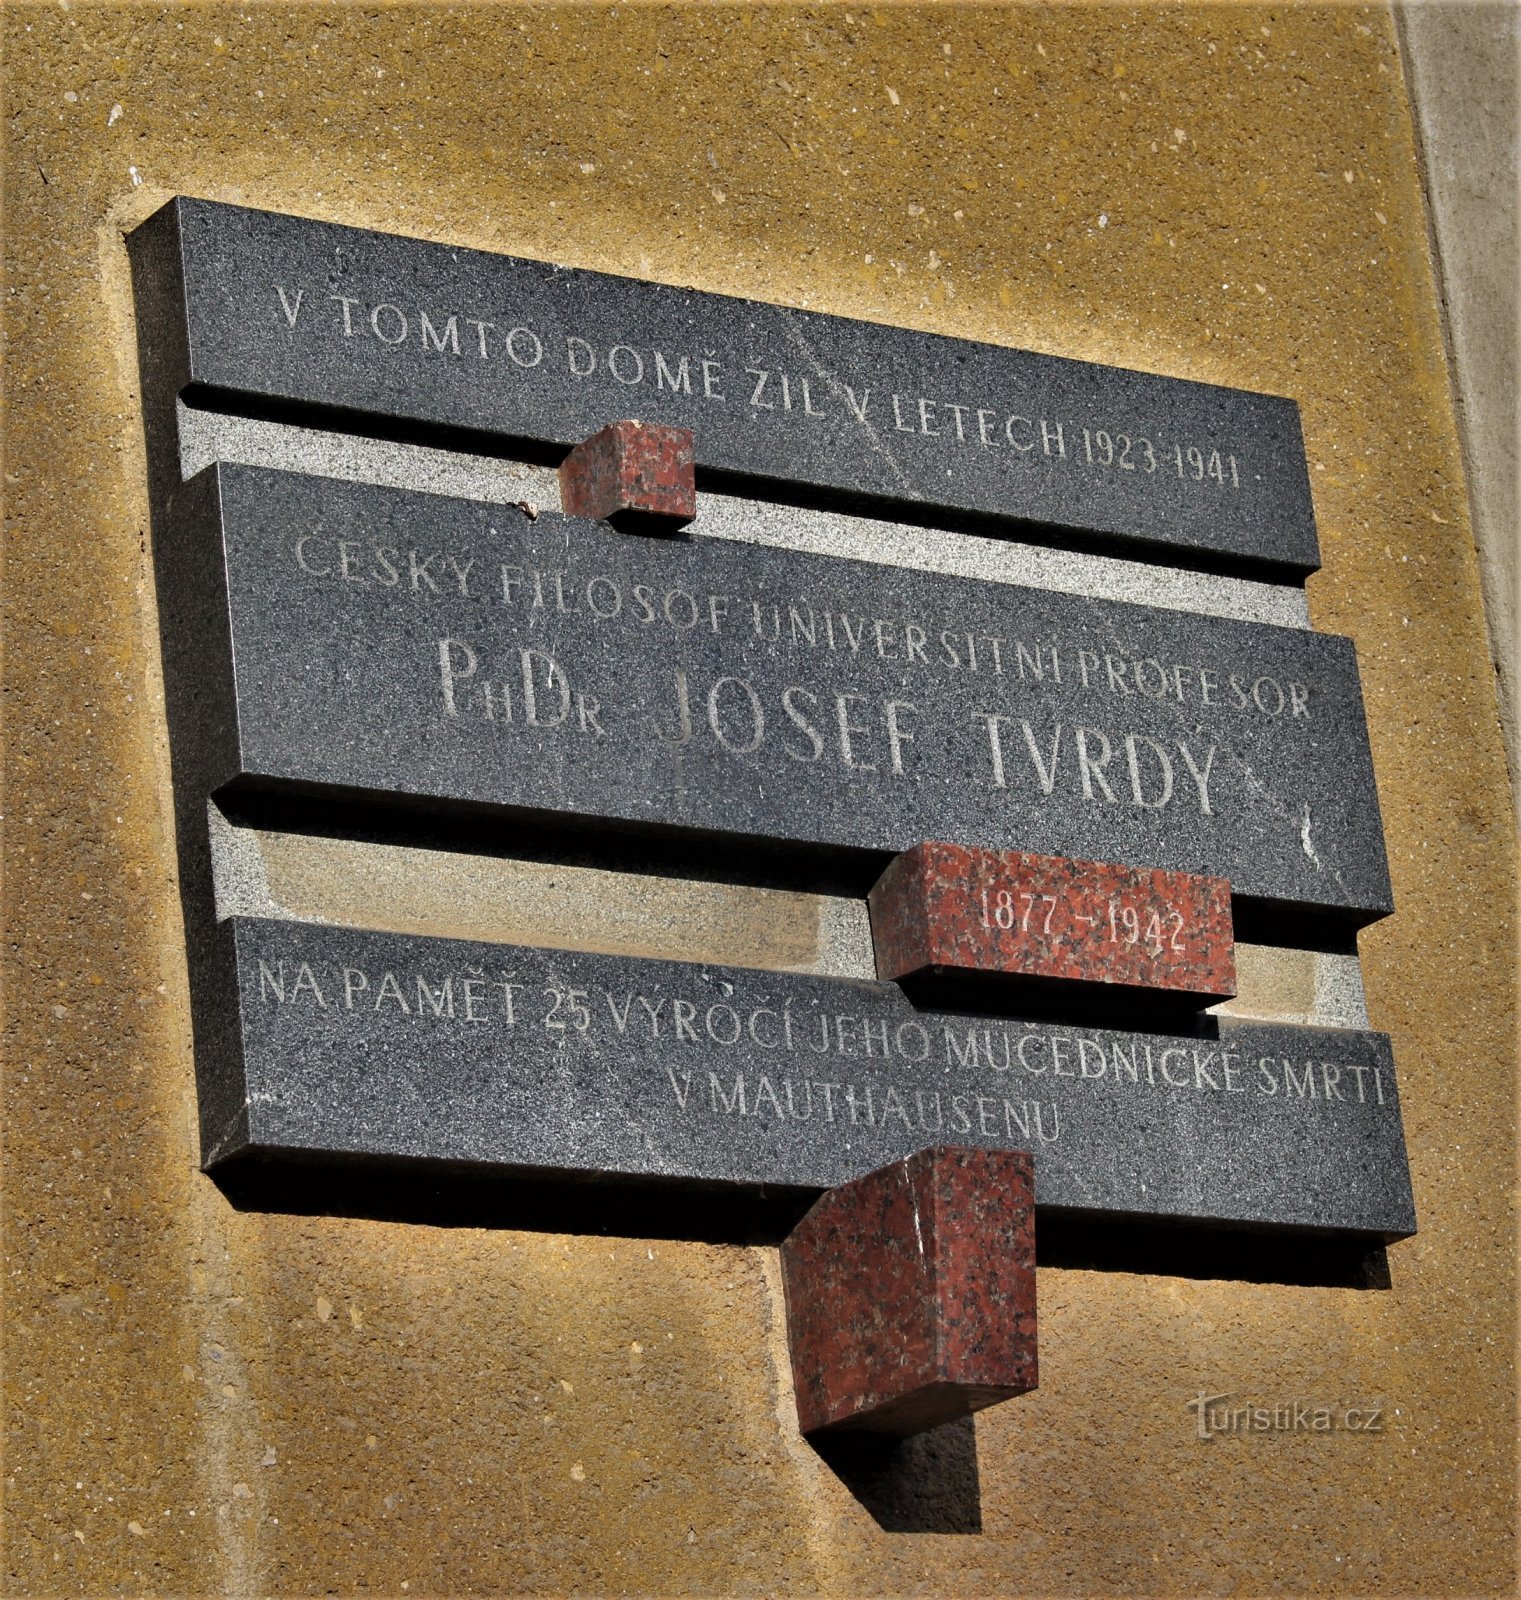 Brno - tablica pamiątkowa Josefa Tvrdy